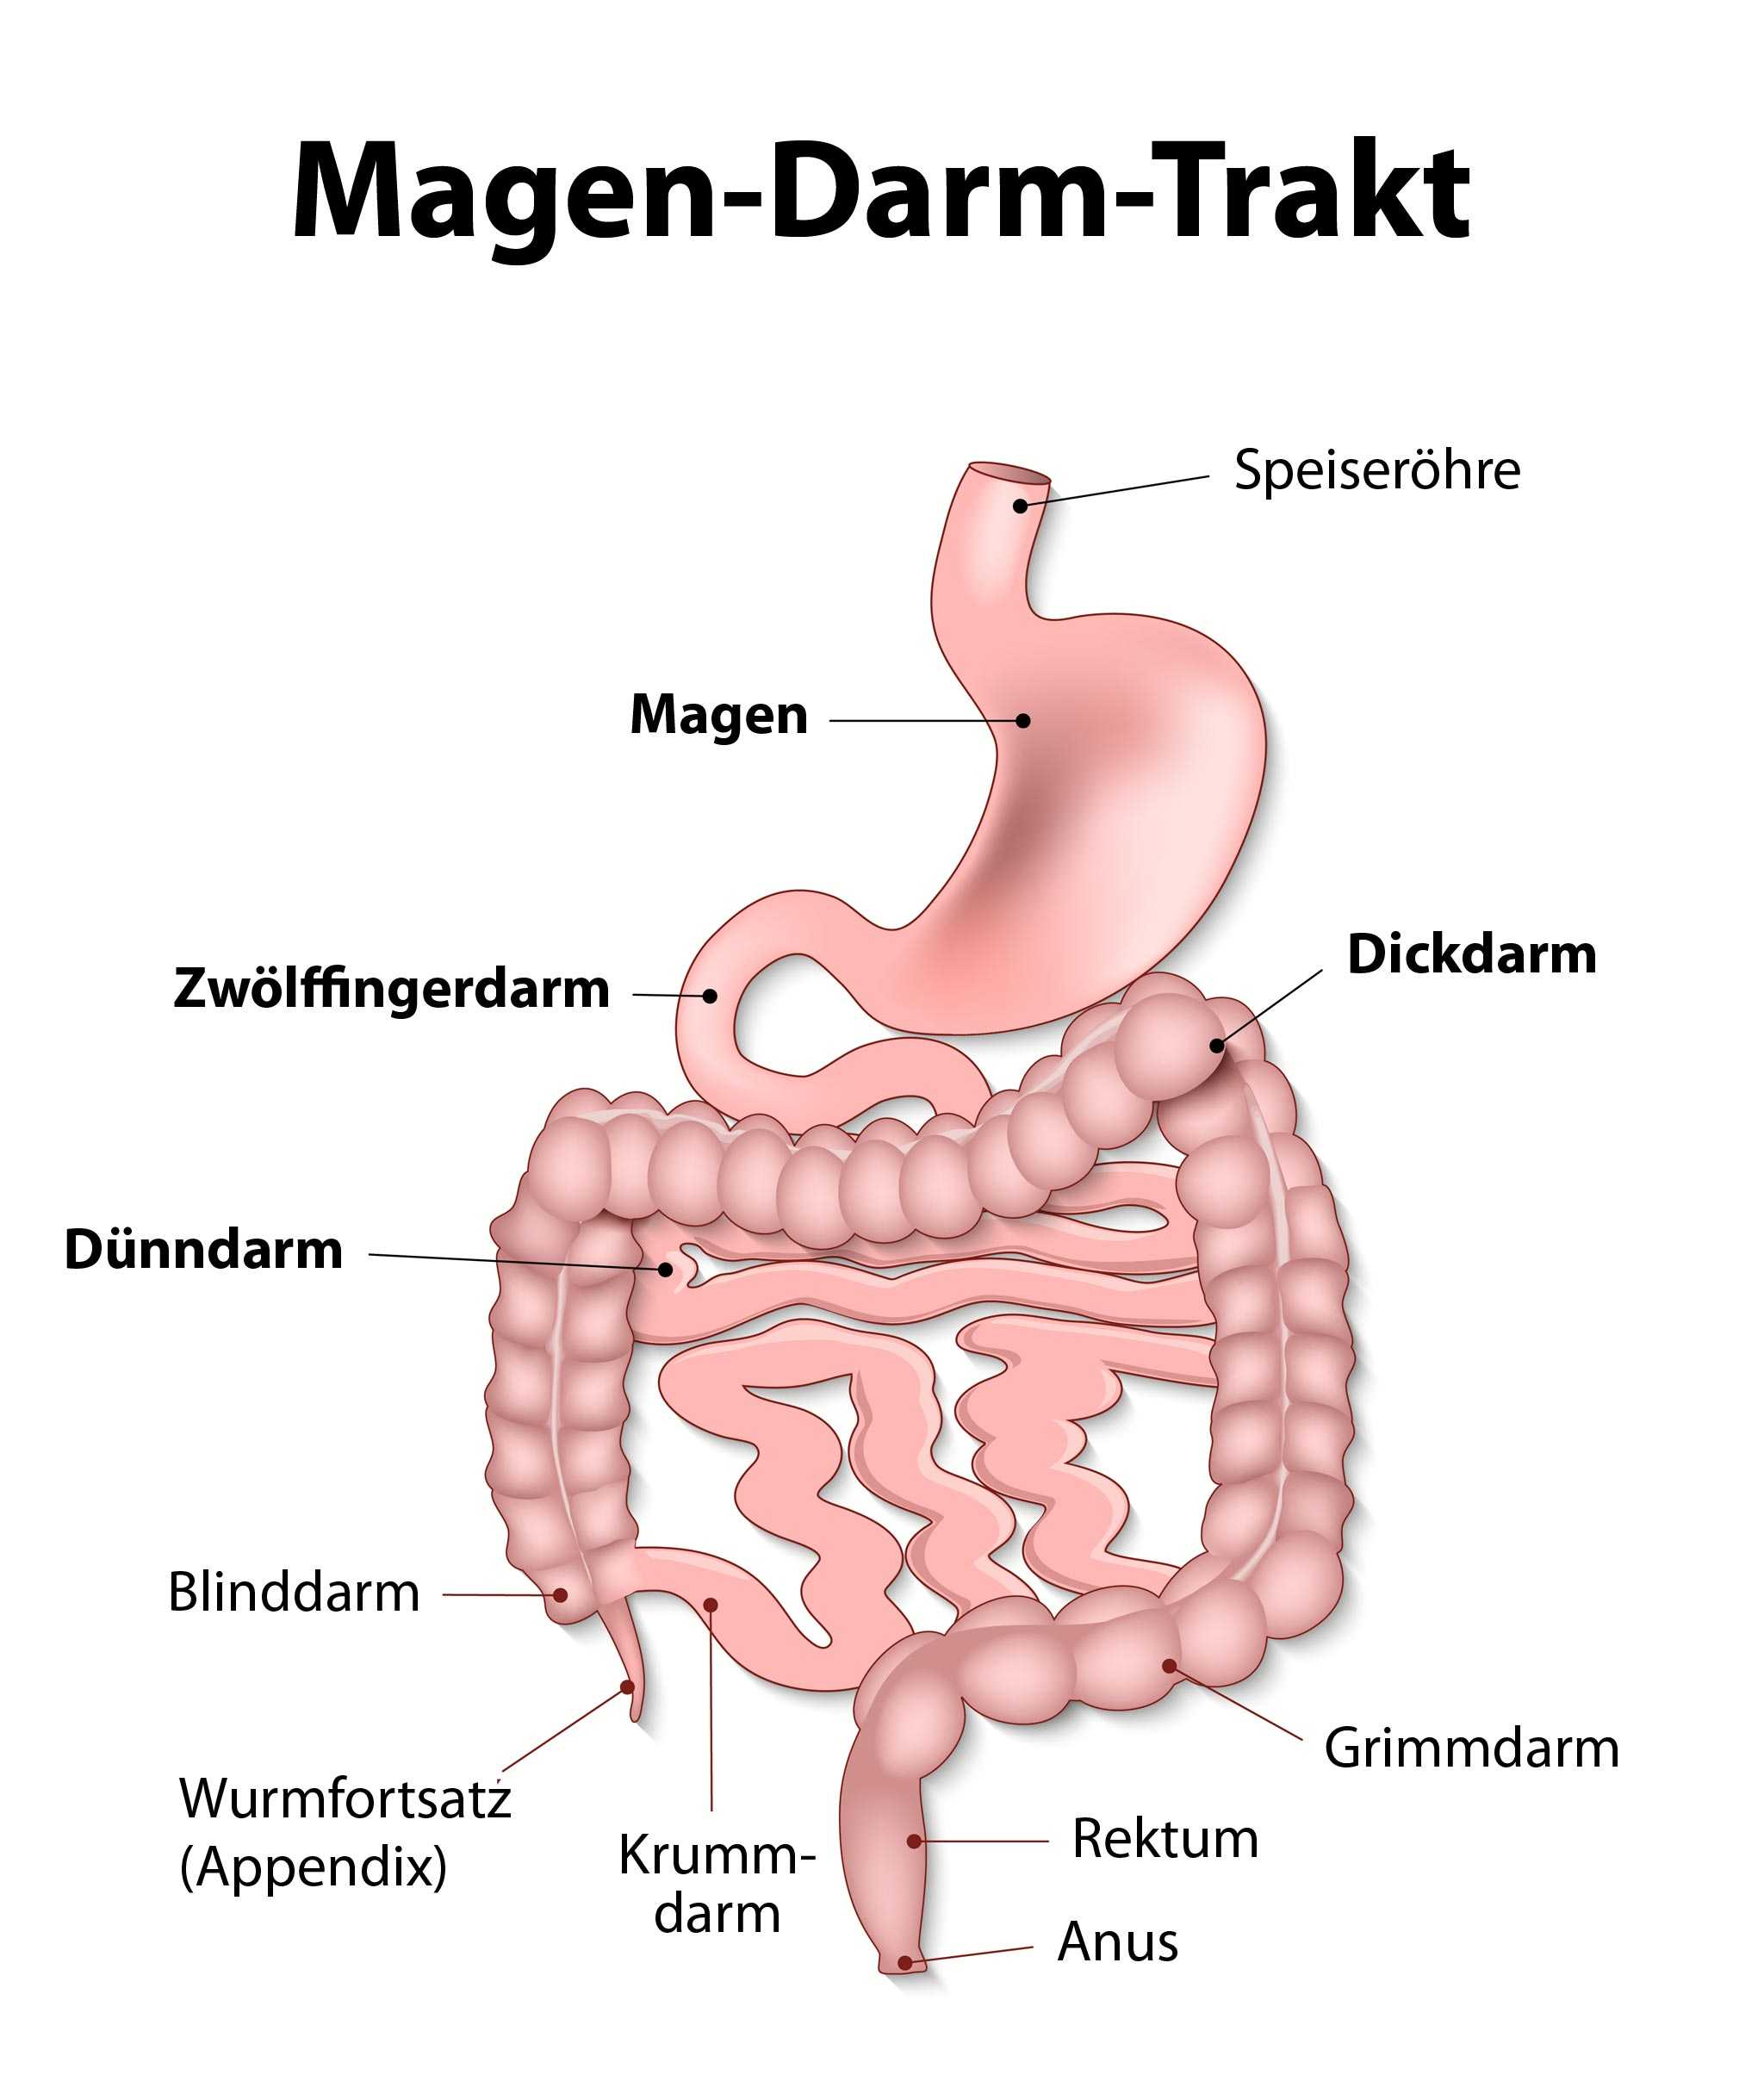 Magen-Darm-Trakt. ©. Der menschliche Magen-Darm-Trakt. 